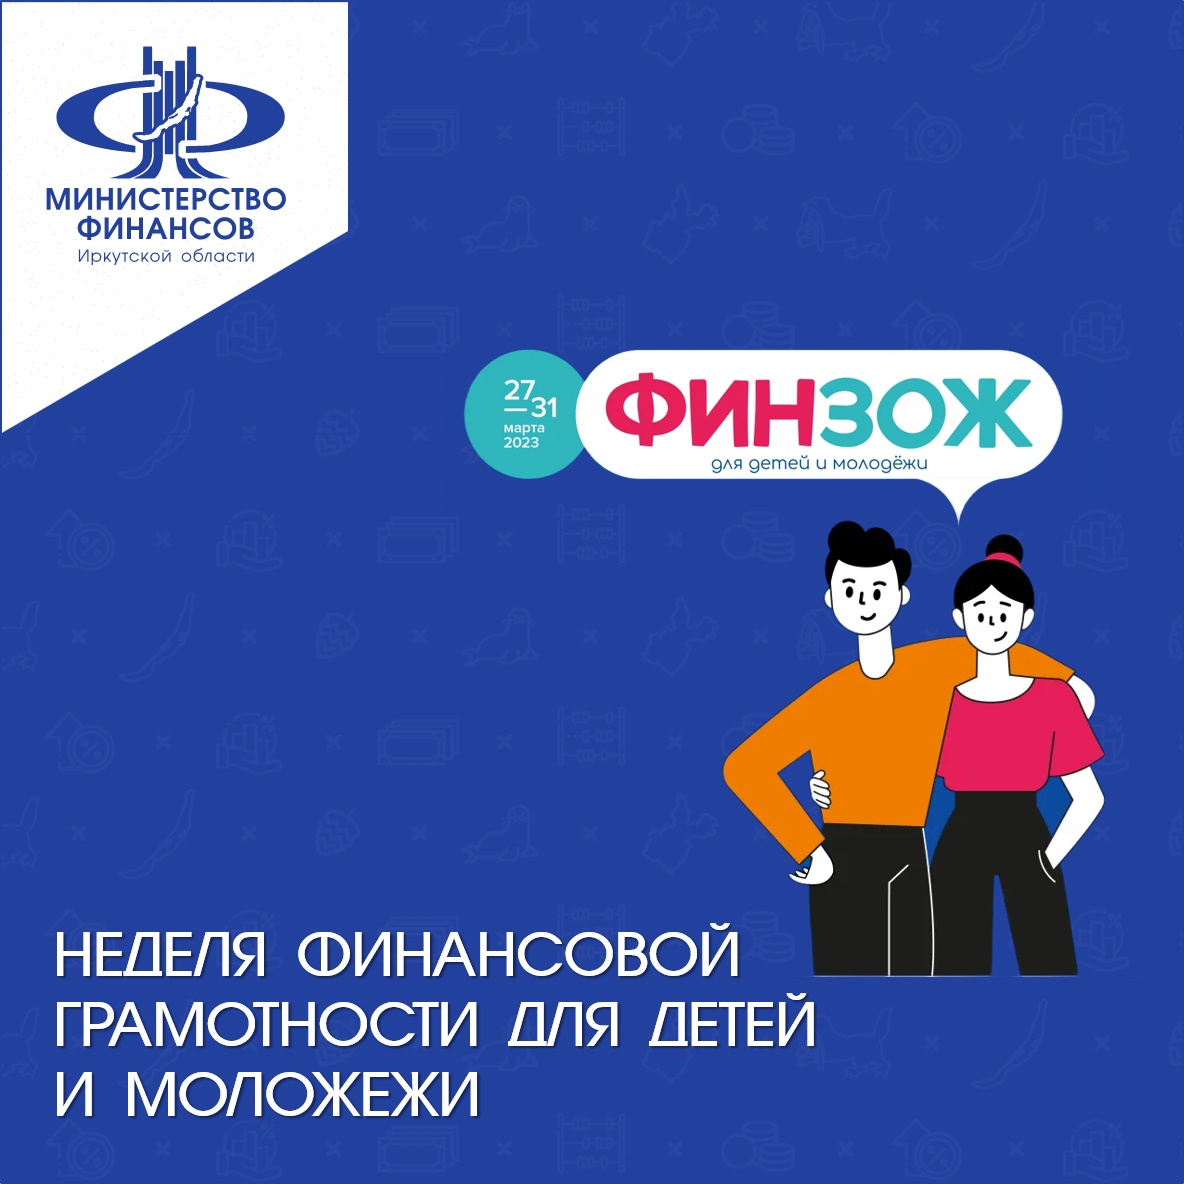 Всероссийские Недели финансовой грамотности для детей и молодежи 27 марта-16 апреля 2023 года.